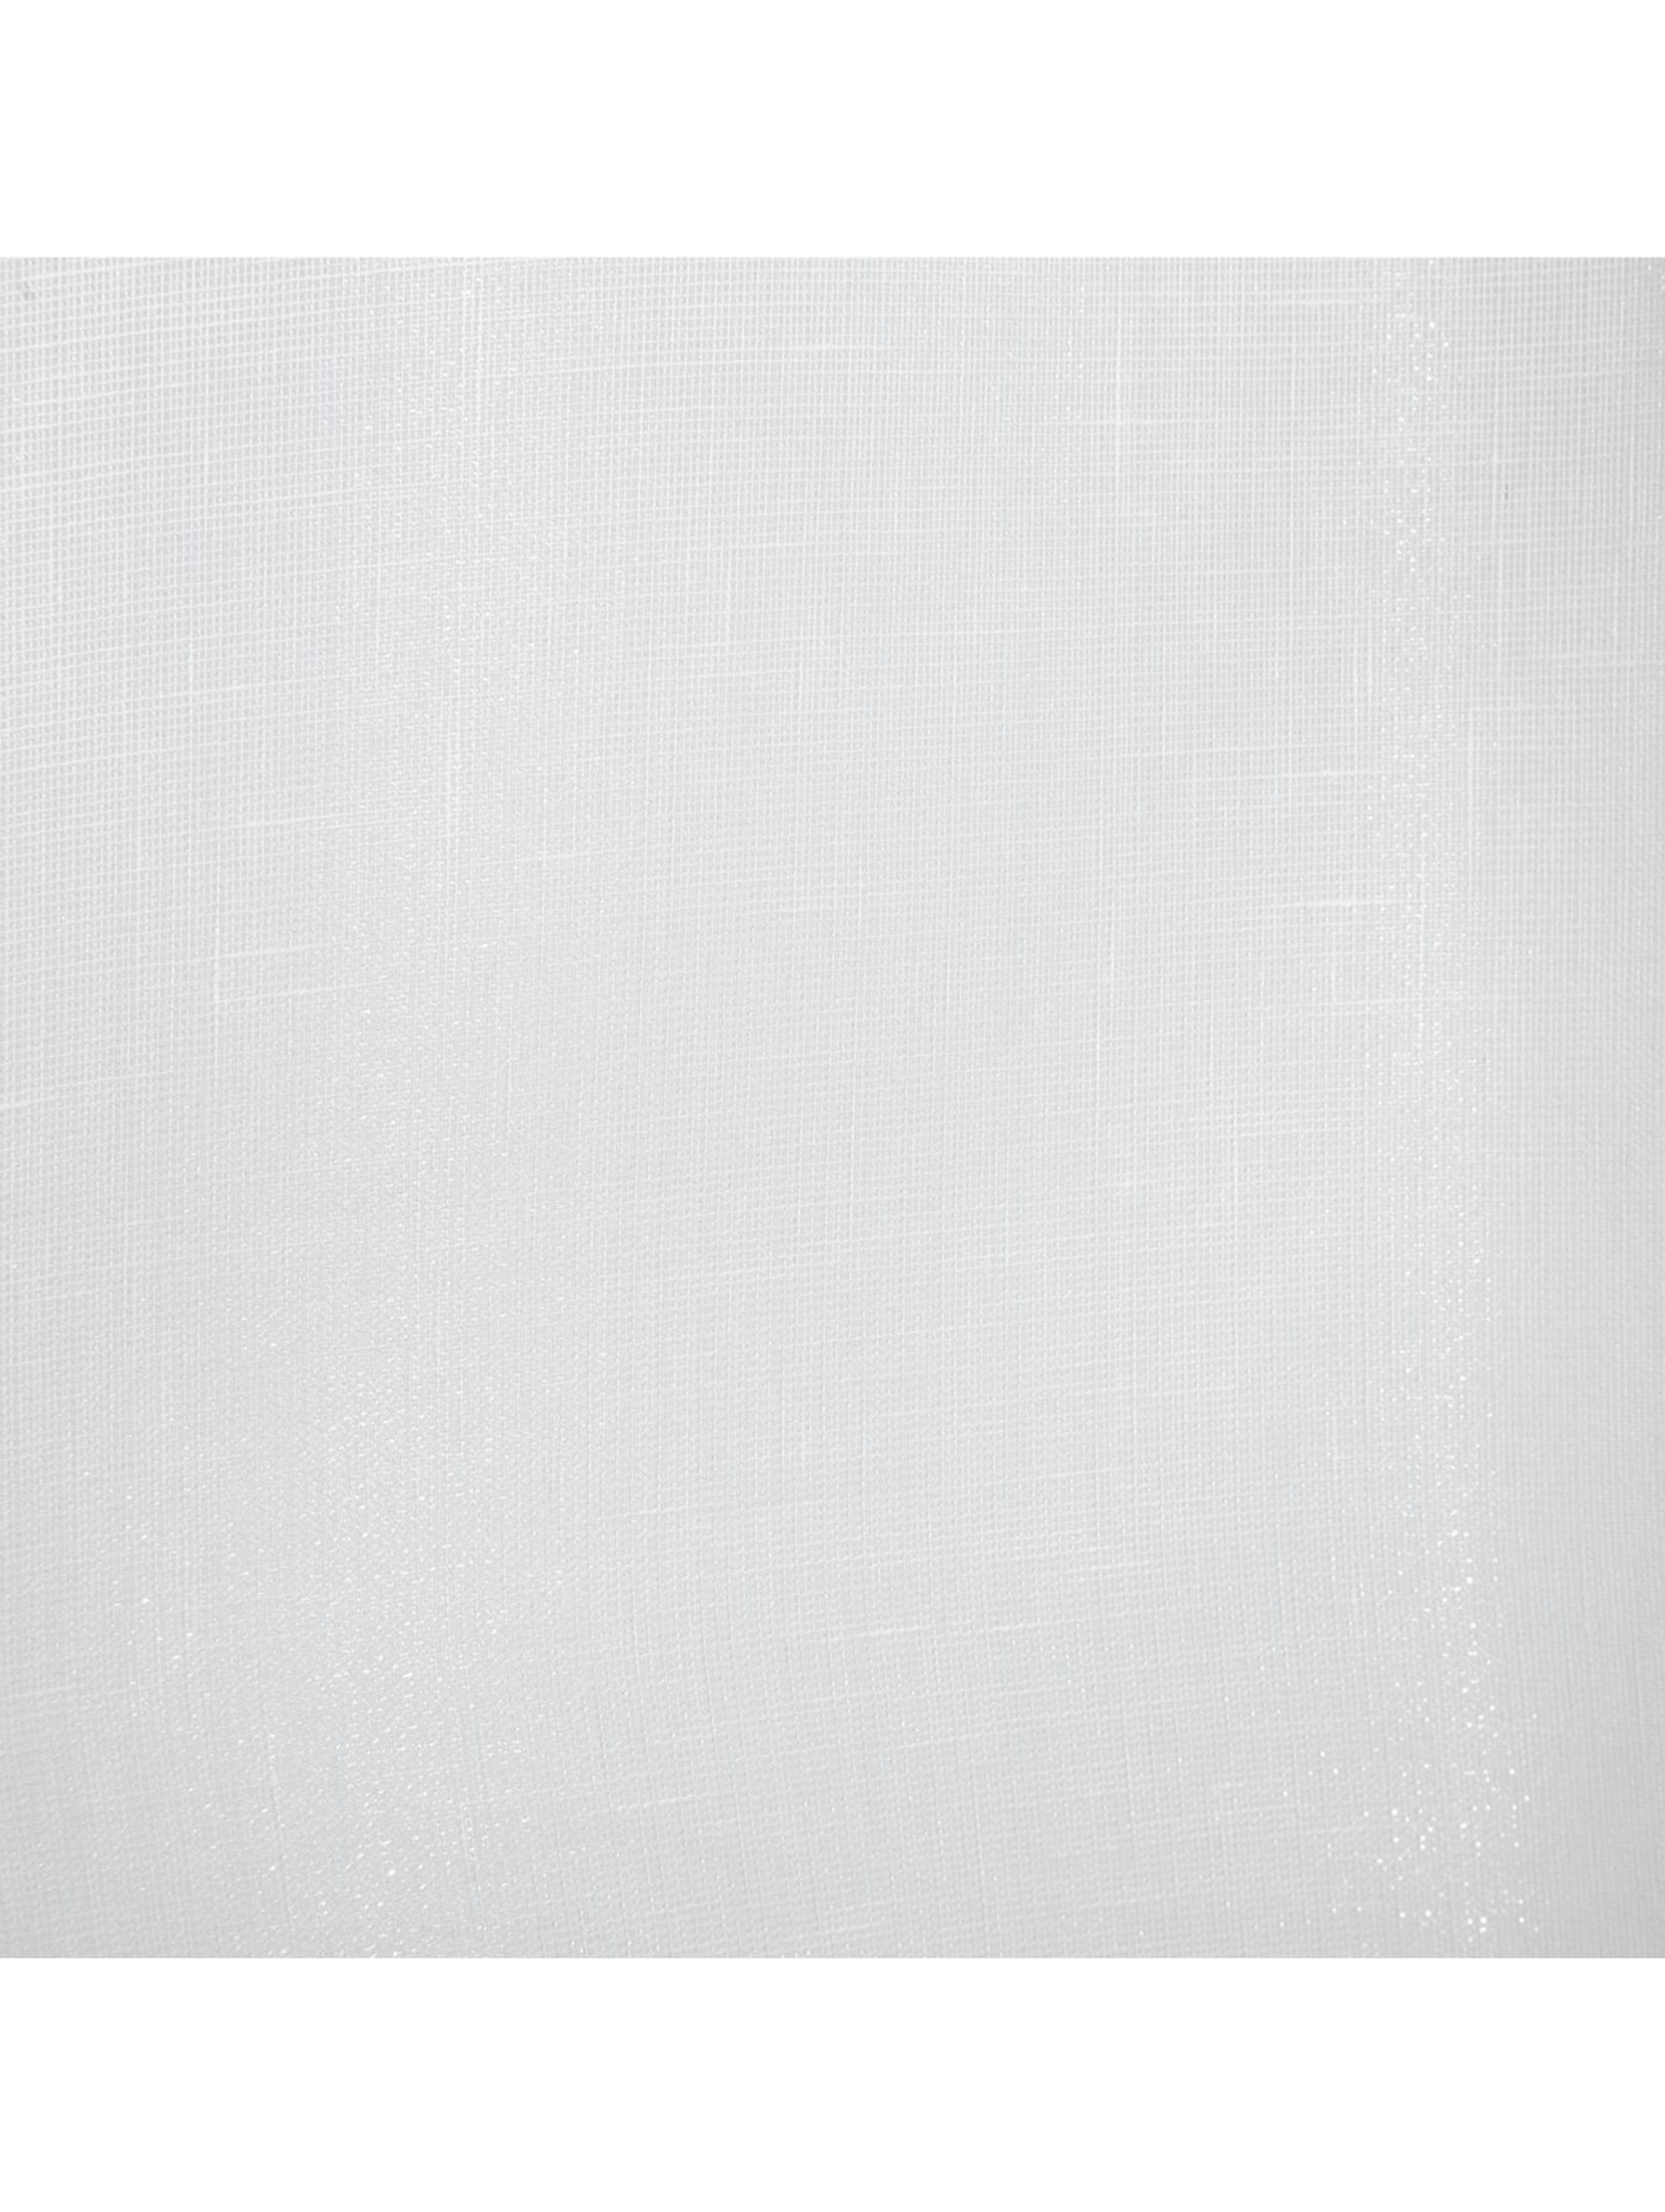 Biała firana na taśmie 140x270 cm